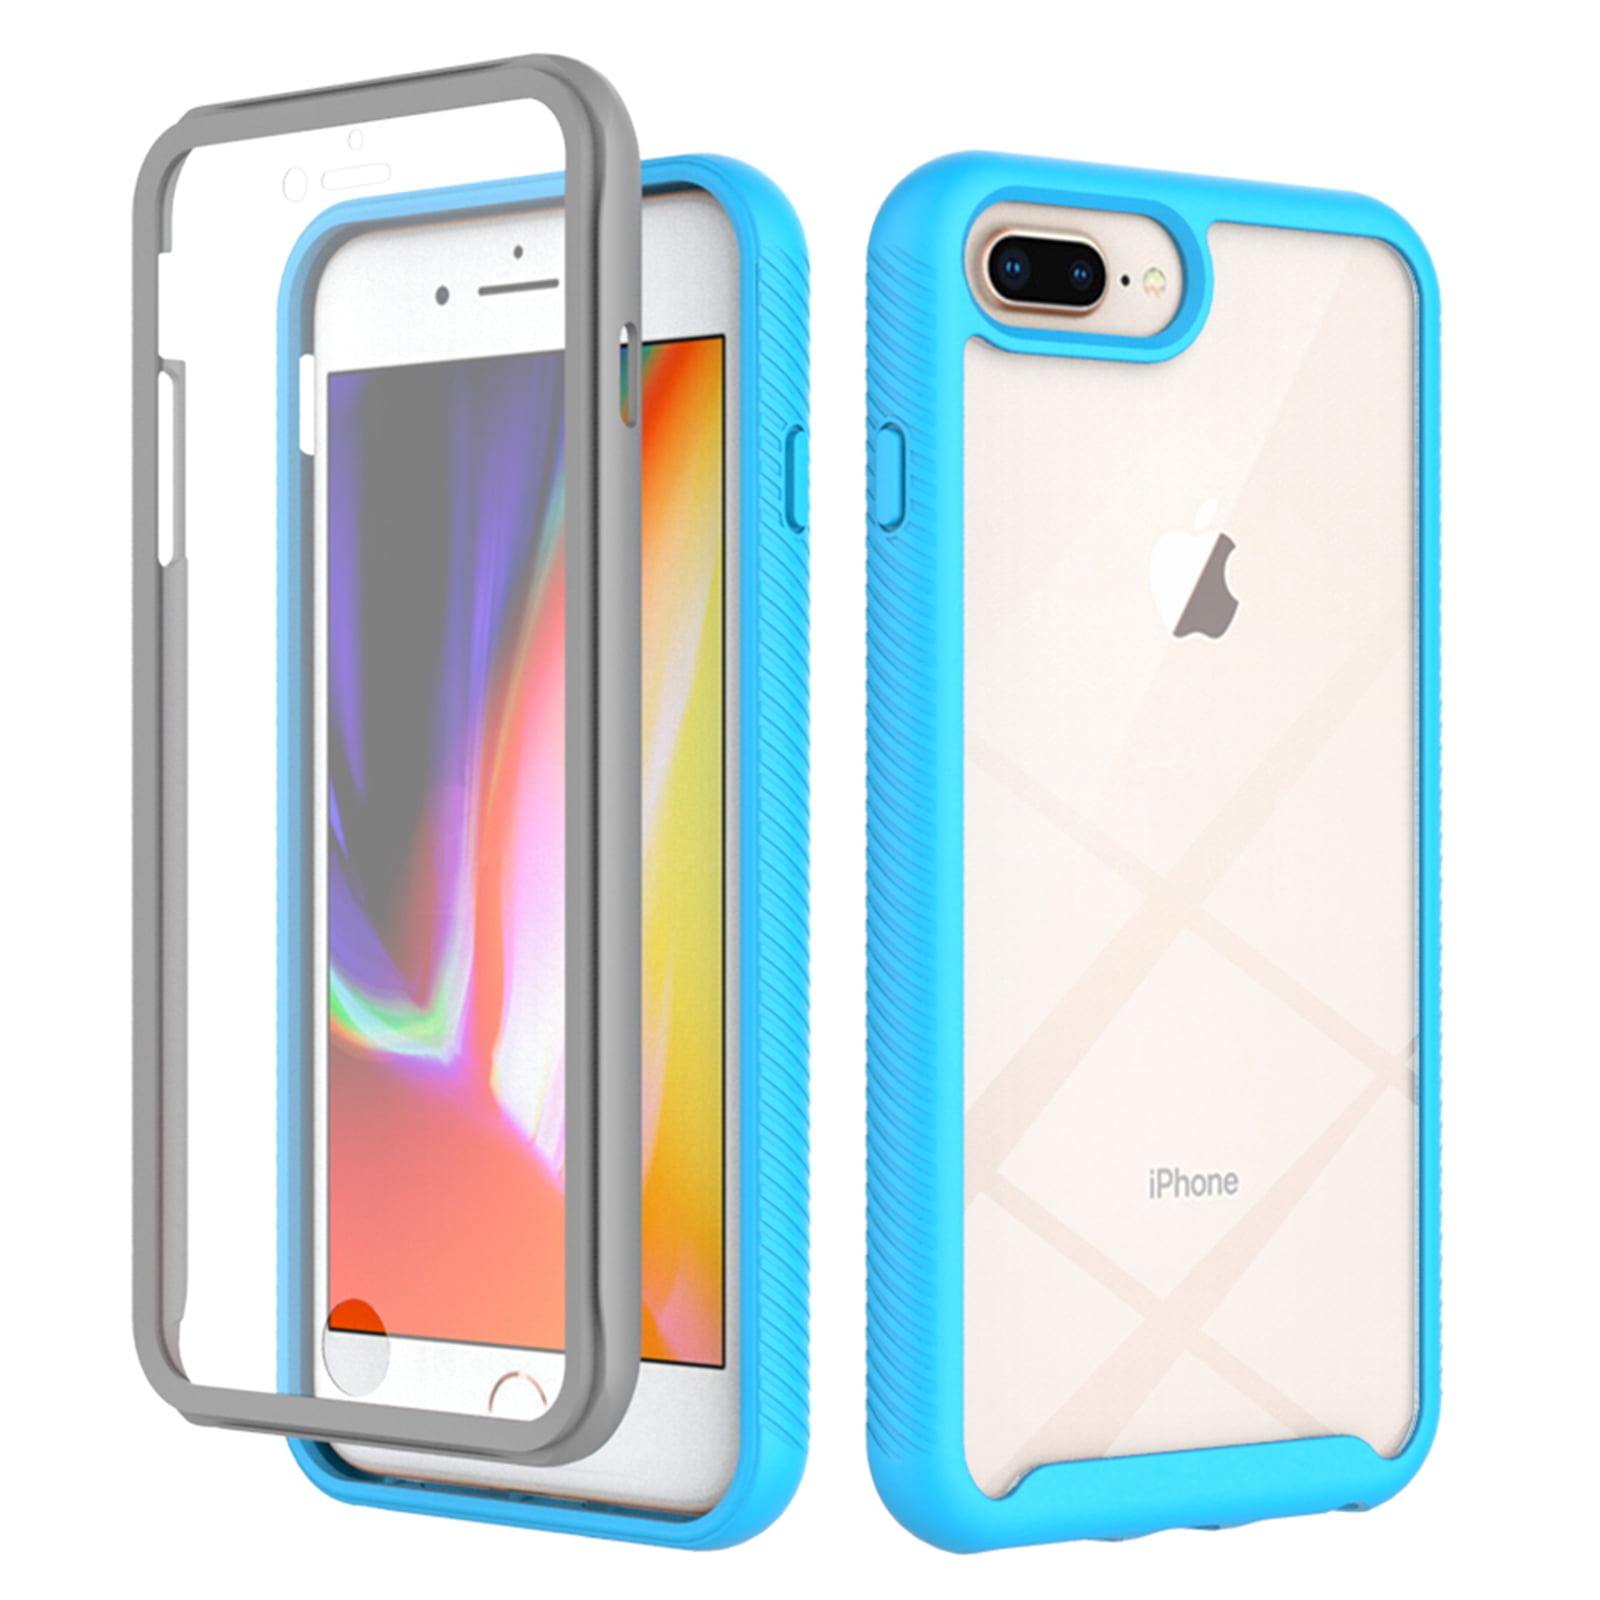 Protector Pantalla iPhone 7 Plus / 8 Plus Frontal y Trasera y Antibacterias  - Protector de pantalla para móviles - Los mejores precios